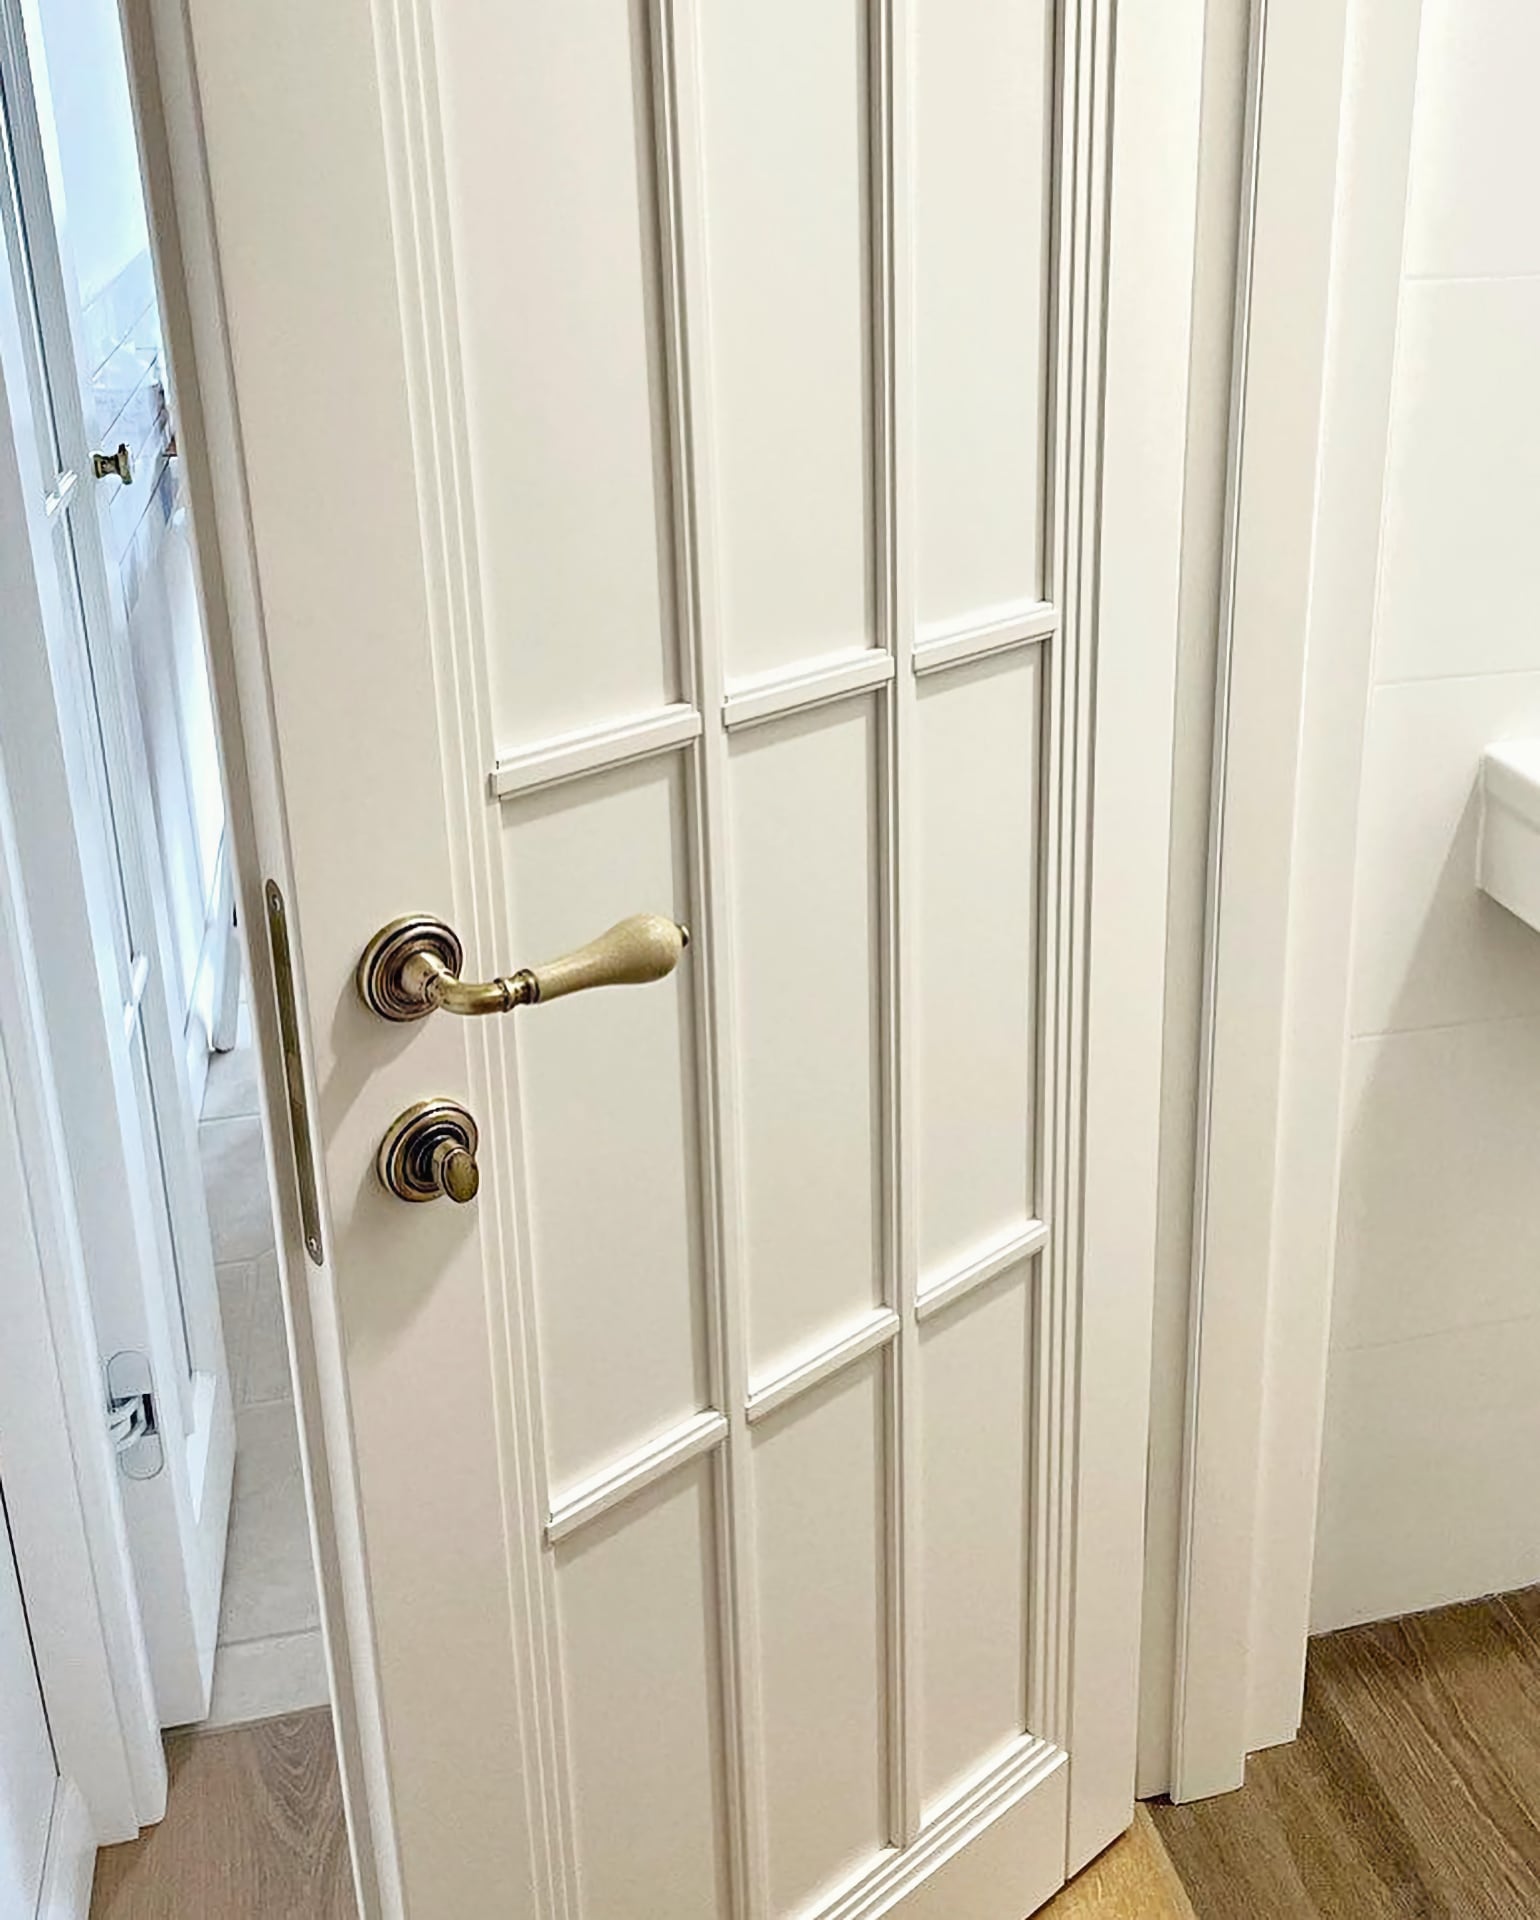 Комнатные двери – глухое полотно, видно качественную фурнитуру с защёлкой